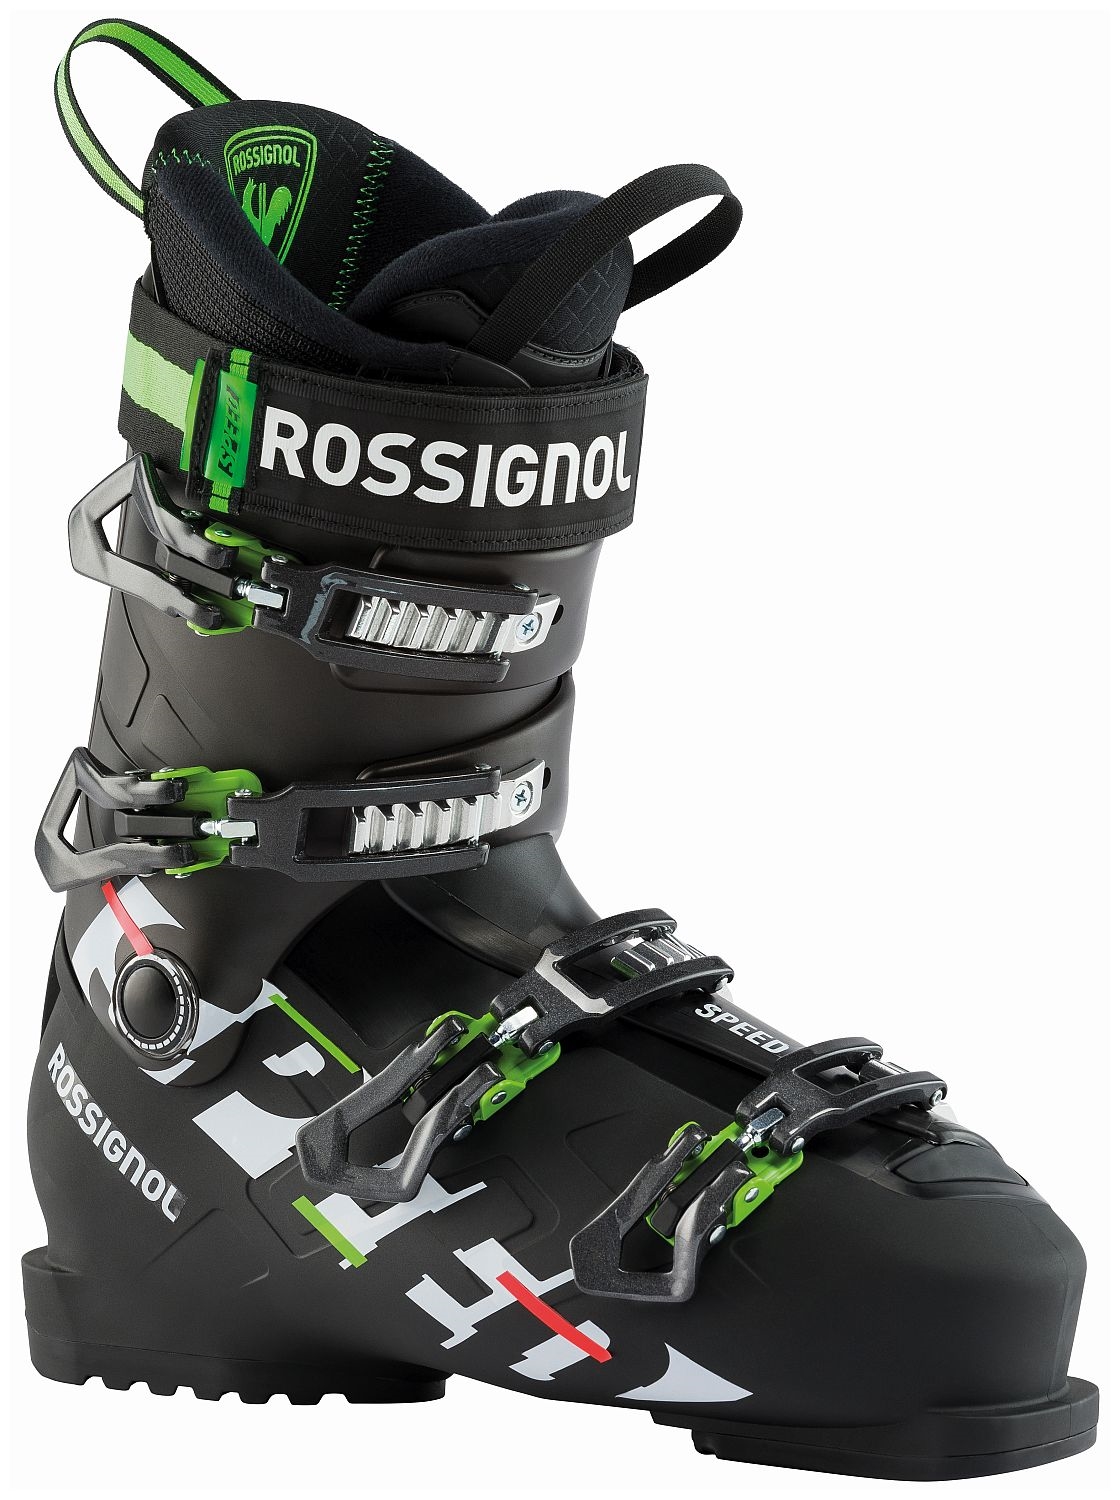 Rossignol buty narciarskie męskie Speed 80